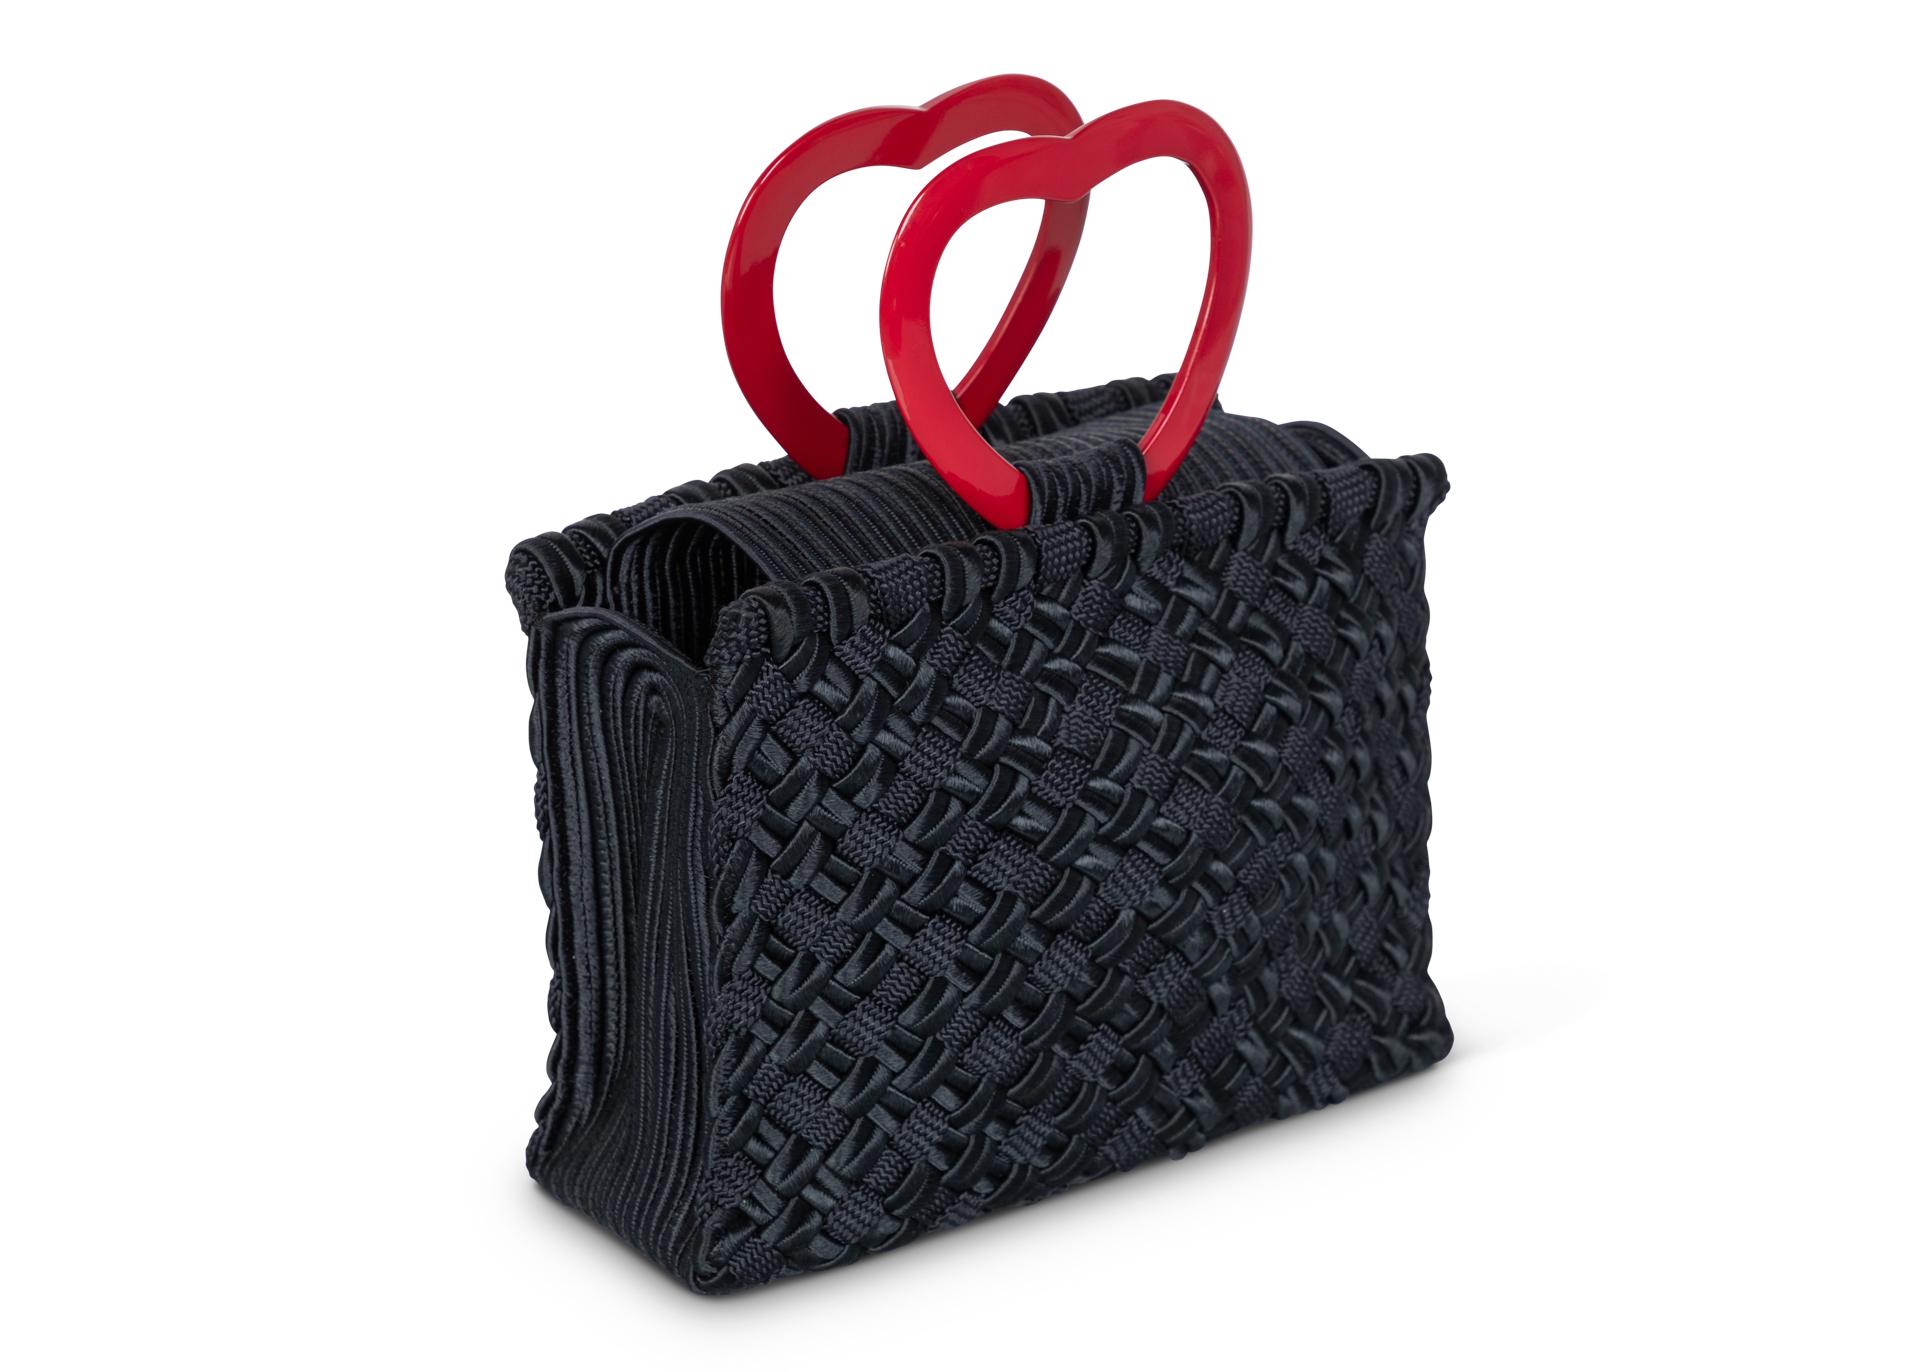 Sac Vintage Yves Saint Laurent Passementerie à poignée en Lucite. Les poignées du cœur sont en lucite rouge brillant, et le corps du sac est noir et magnifiquement tissé de trois textures différentes.
En parfait état. Les pièces vintage de haute